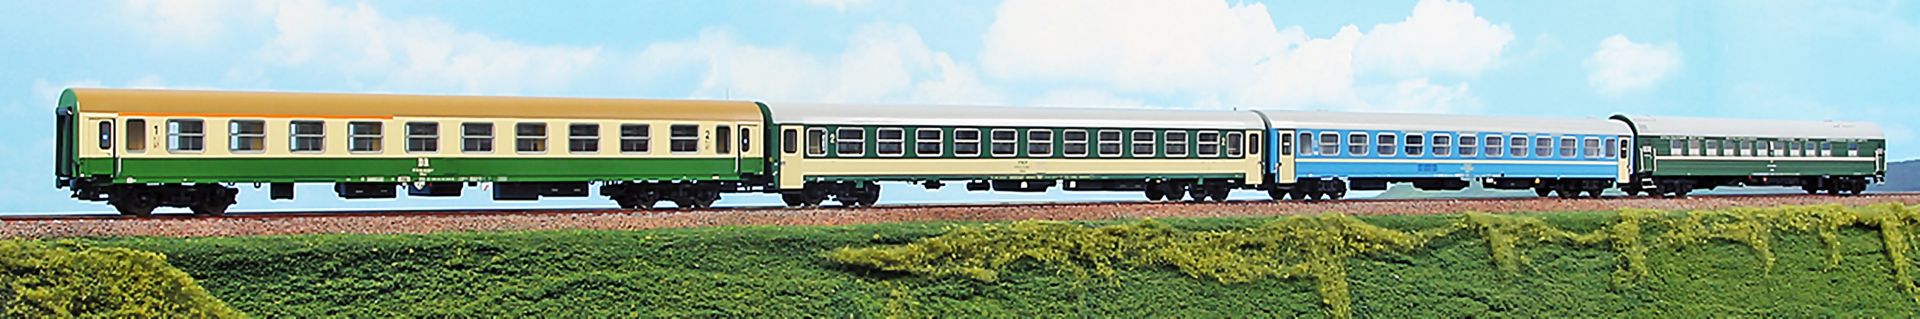 ACME AC 55322 - 4er Set Personenwagen 'Hoek van Holland - Warszawa Express', DR, Ep.V